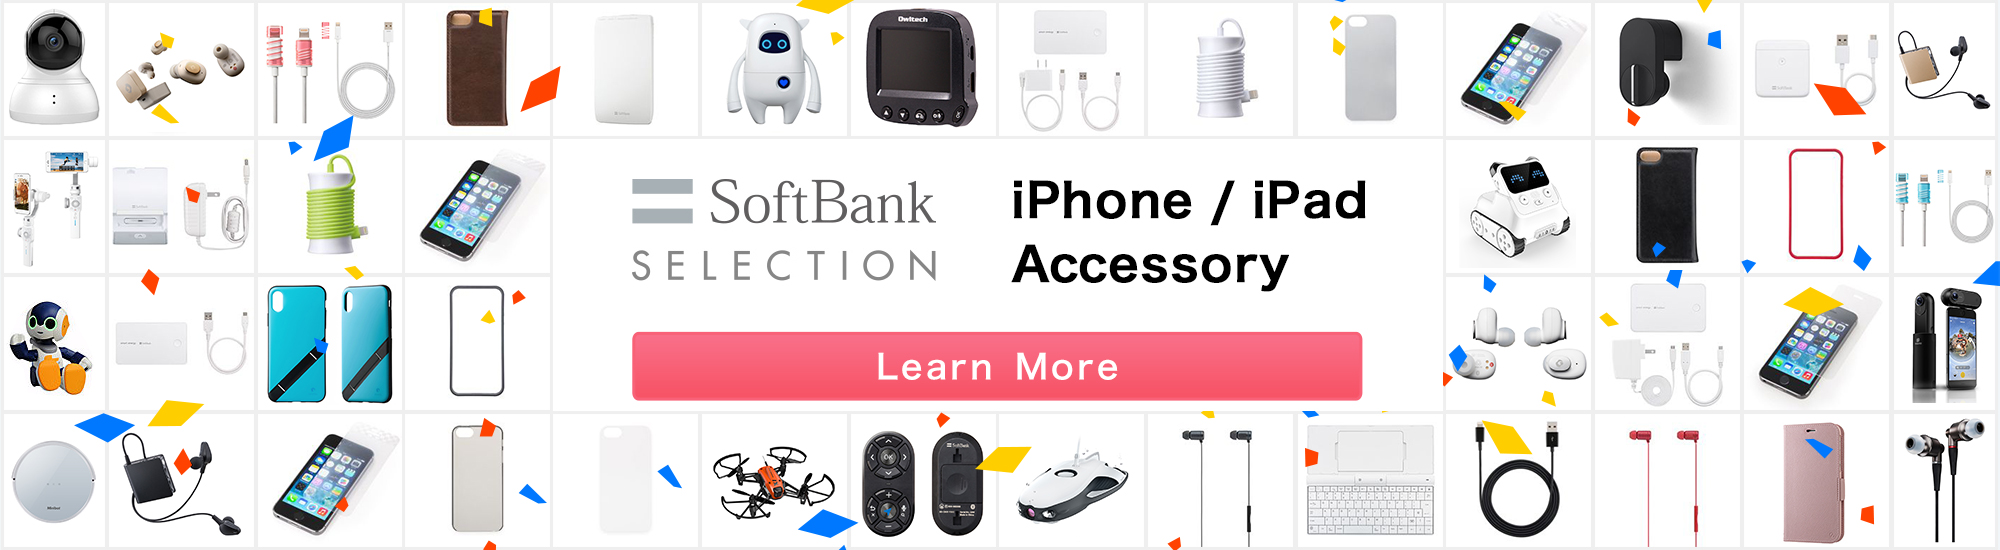 SoftBank Selection